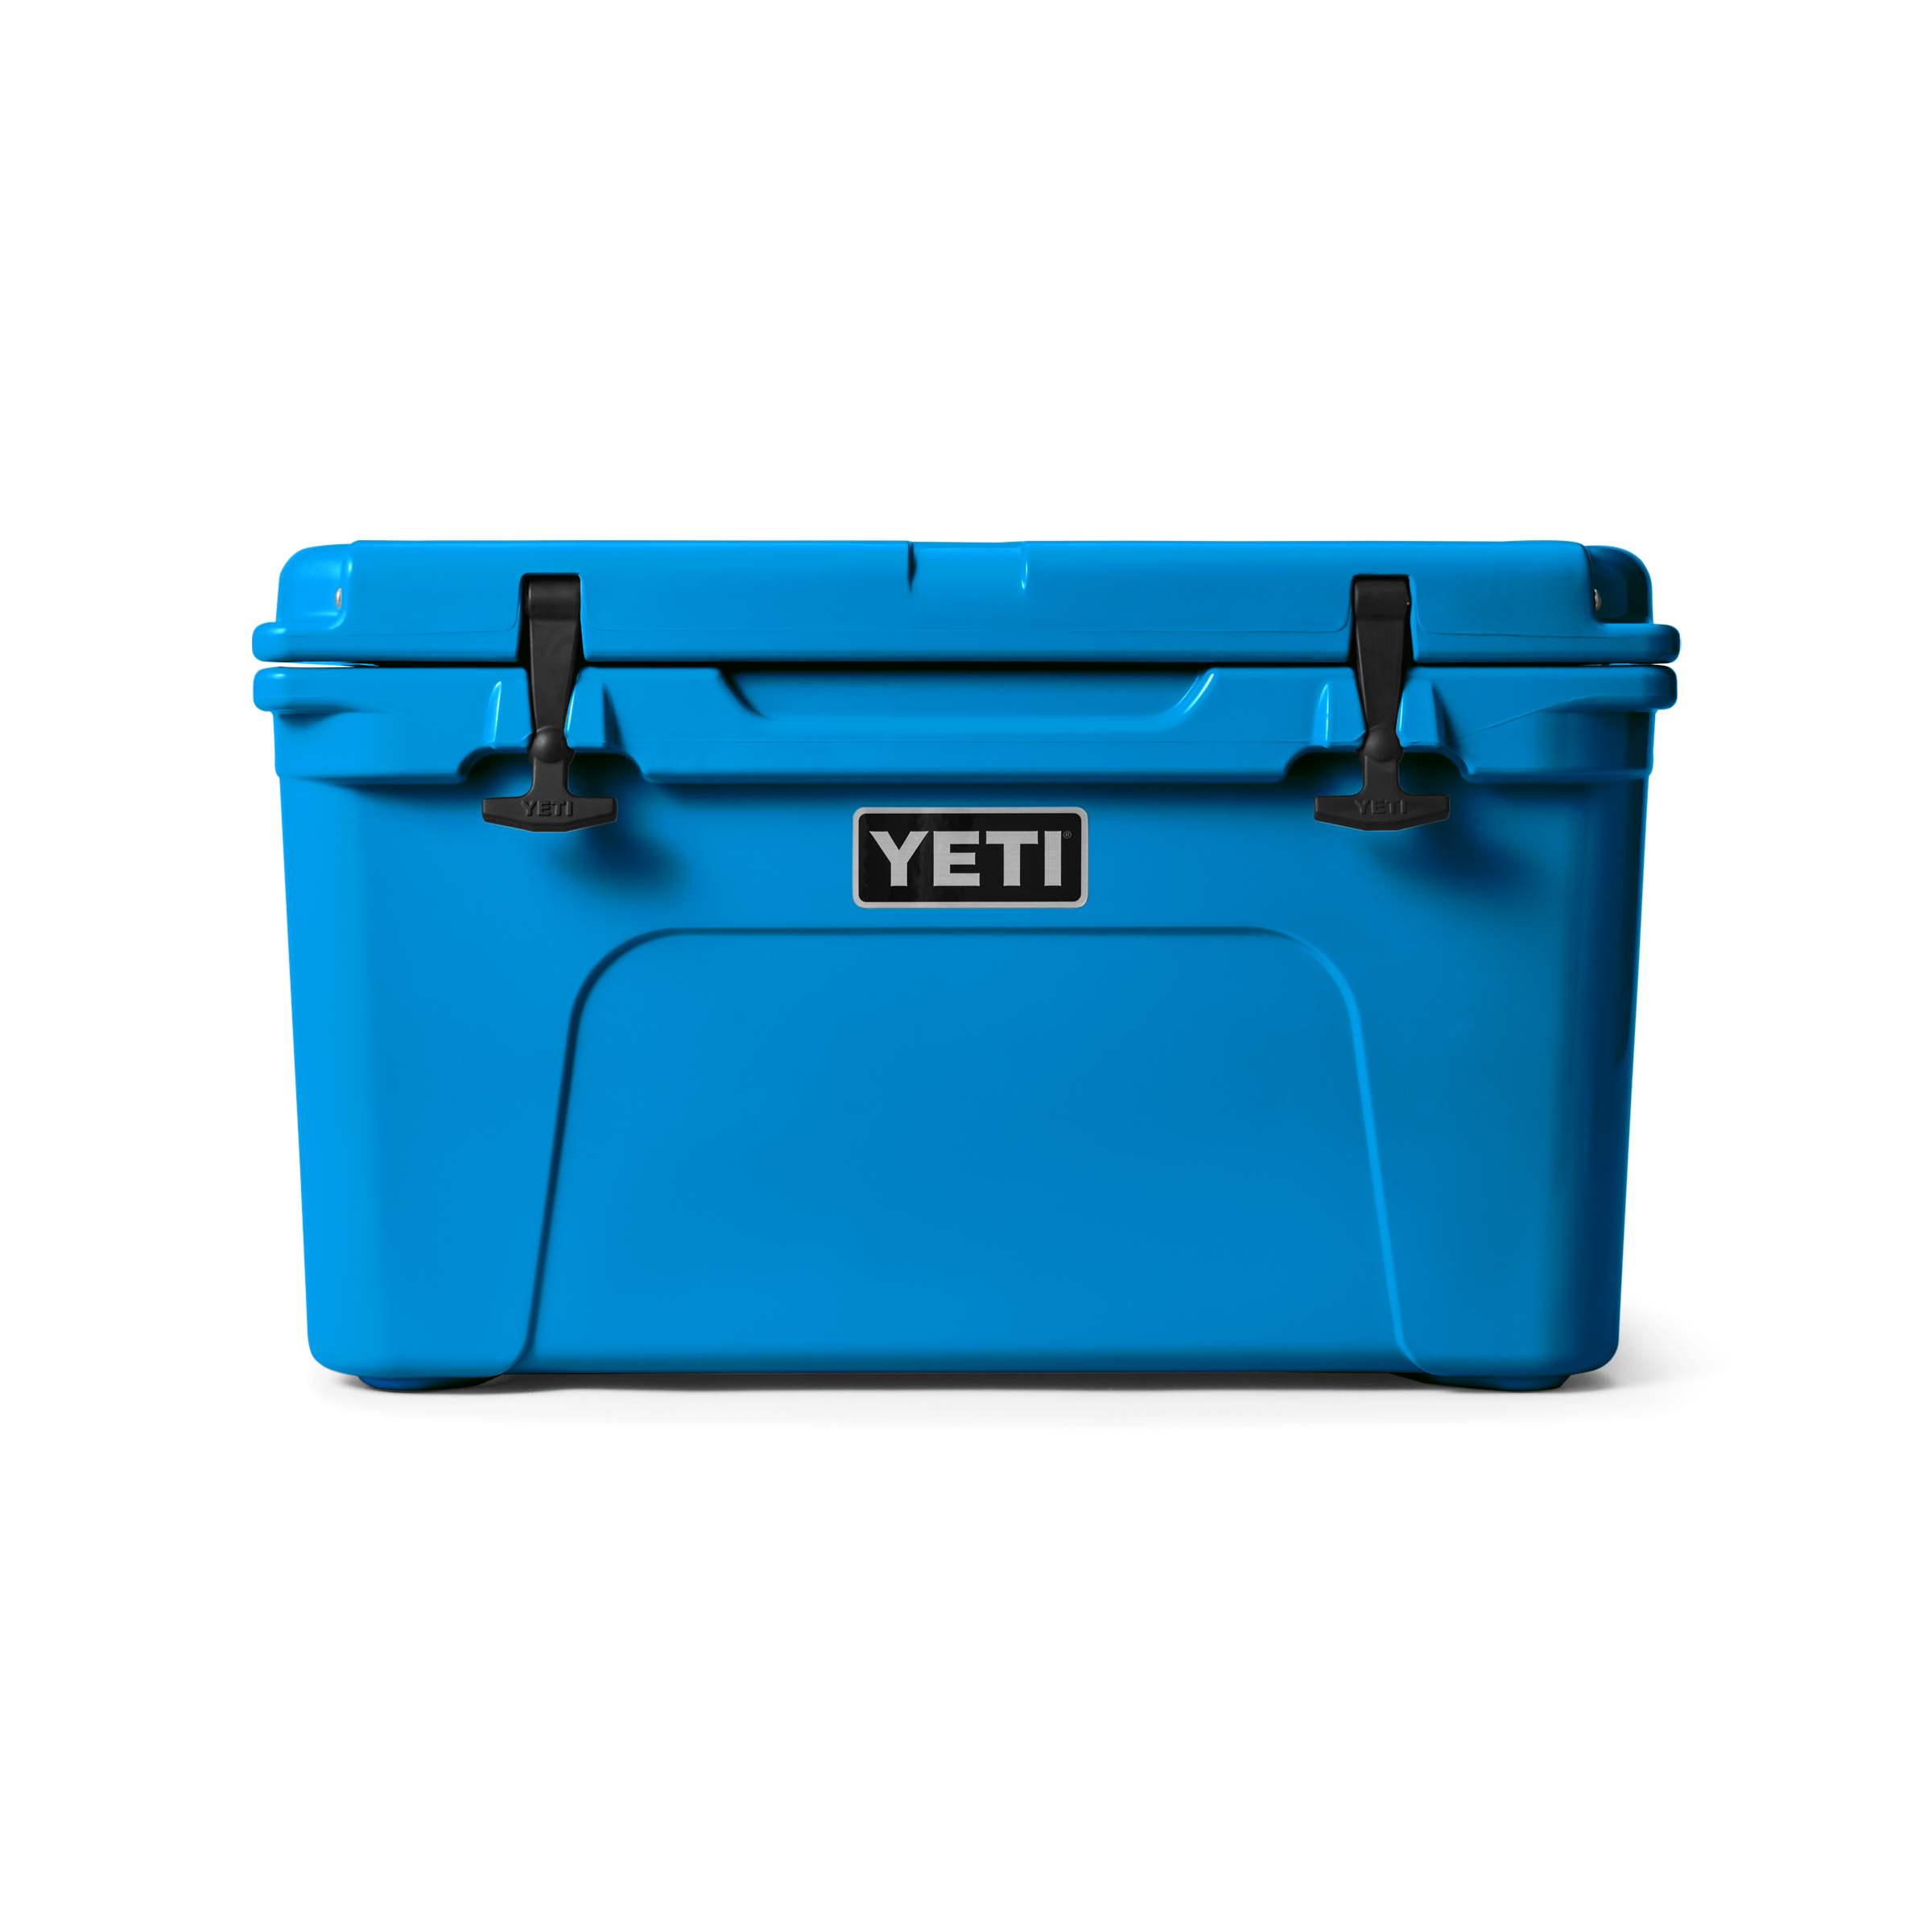 YETI® Tundra 45 Cool Box – YETI EUROPE